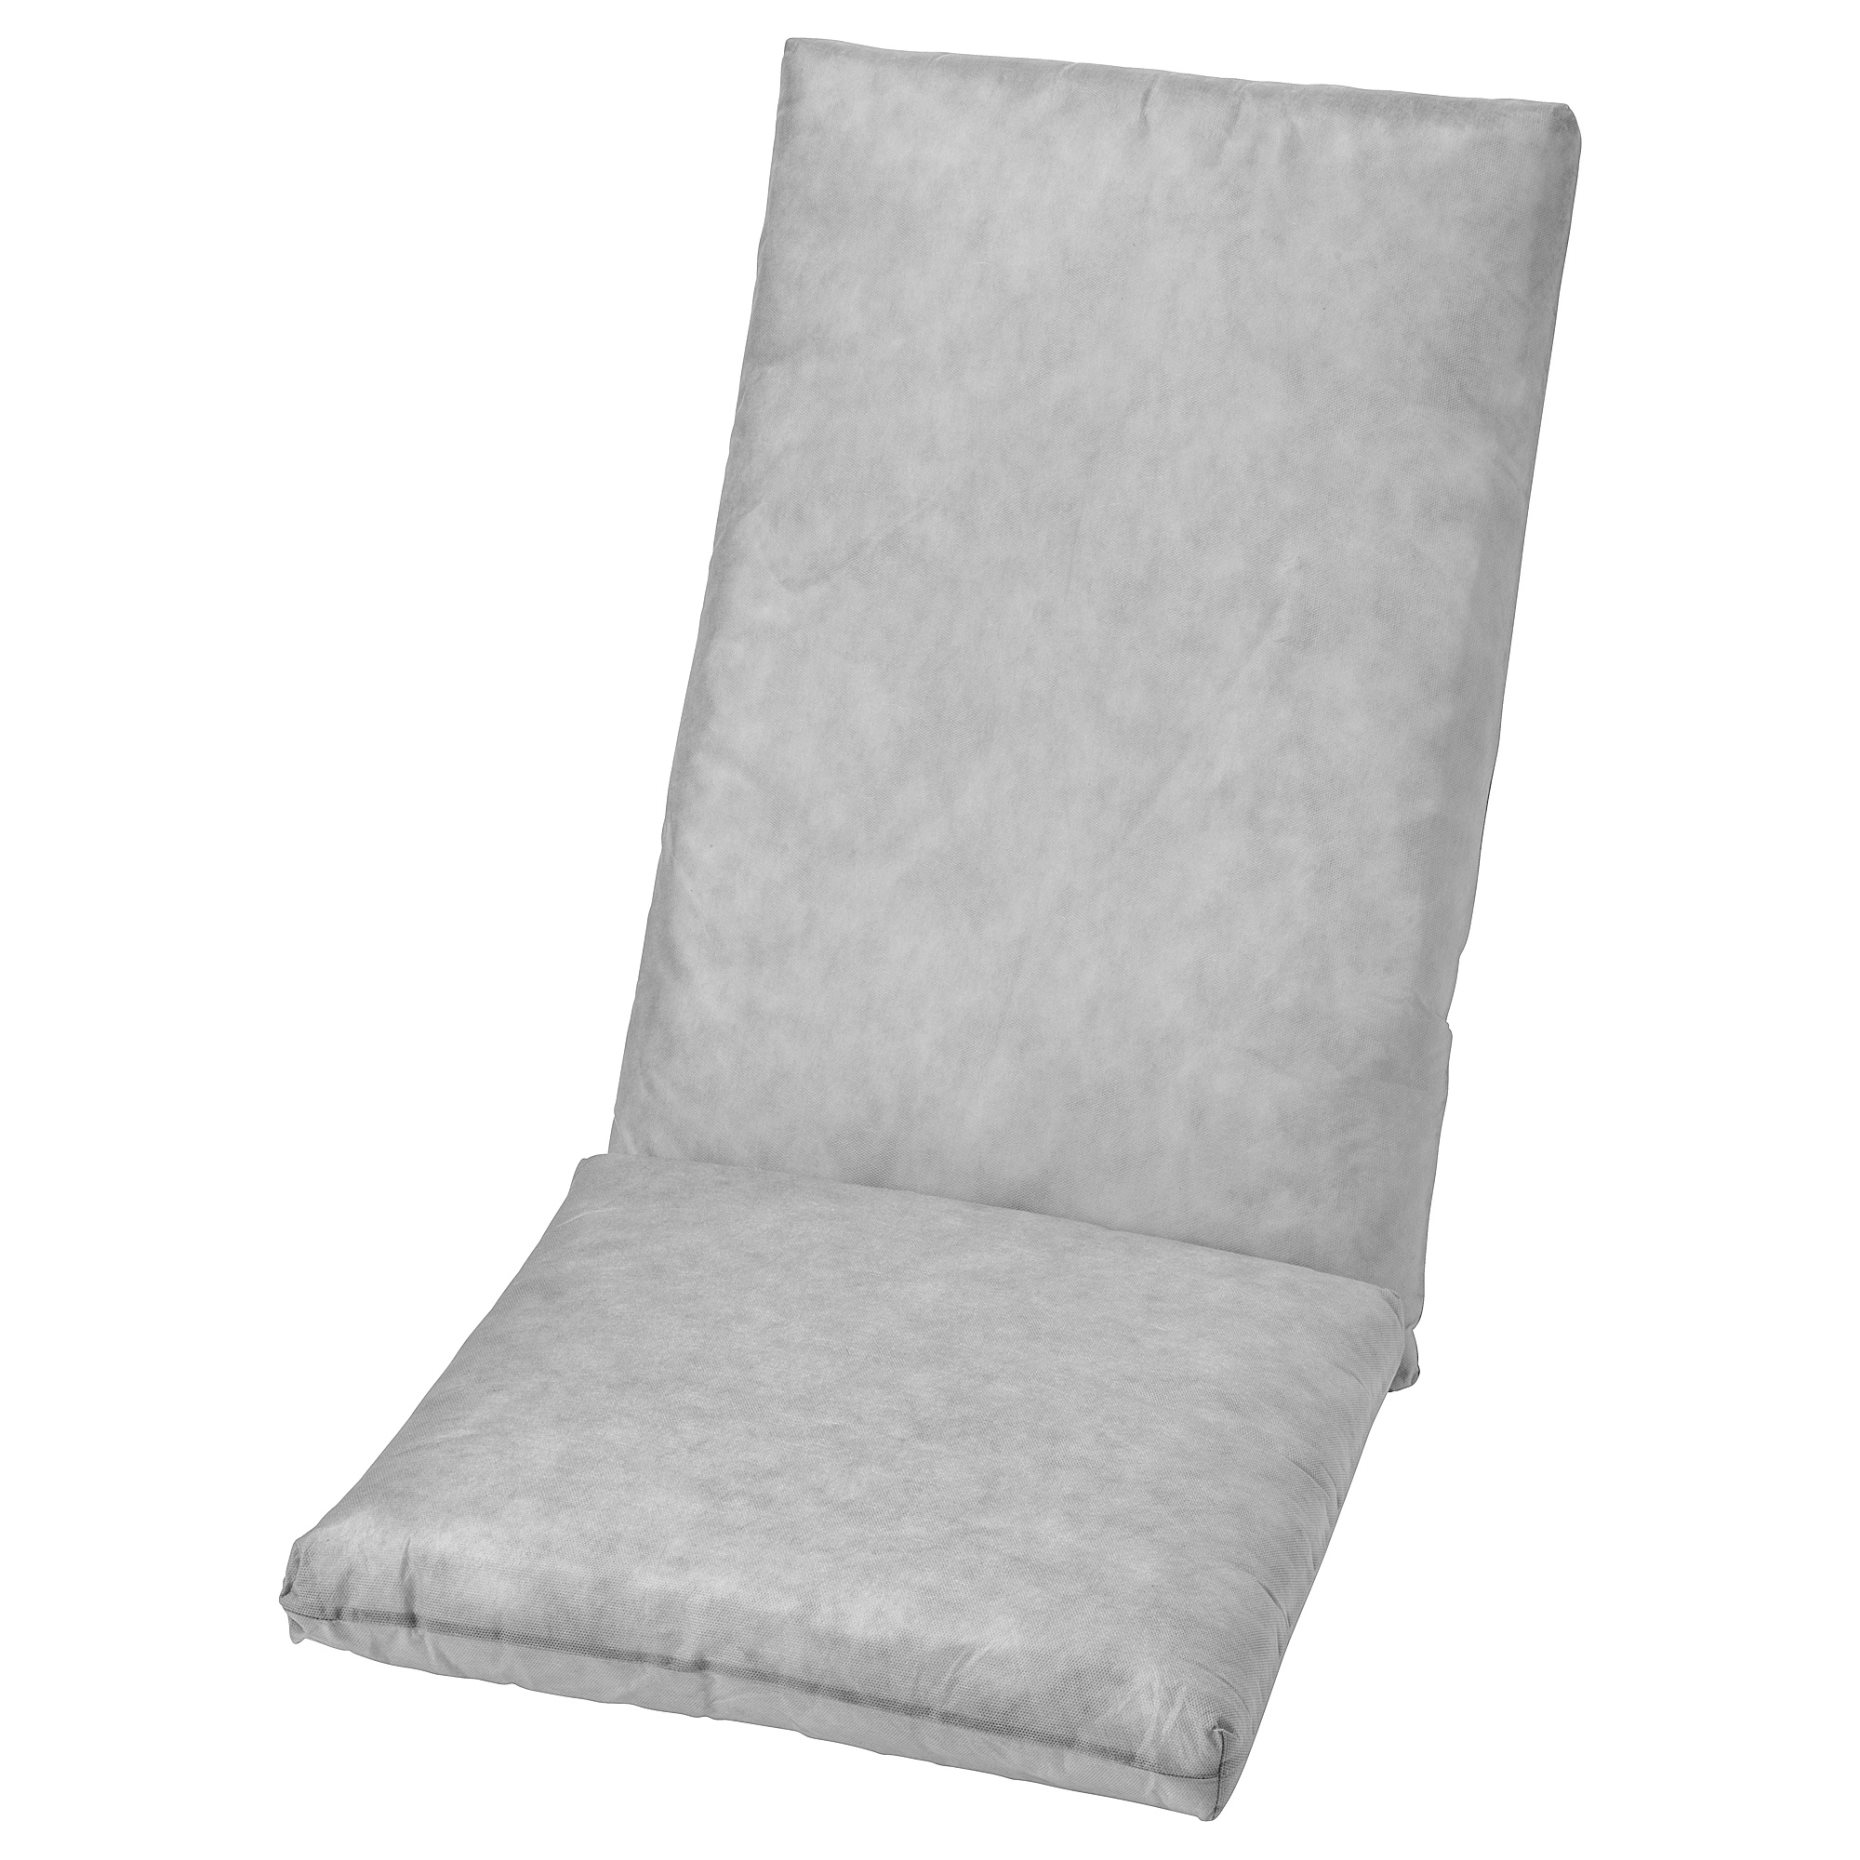 DUVHOLMEN, пълнеж за седалка/облегалка, за употреба на открито, 203.918.56